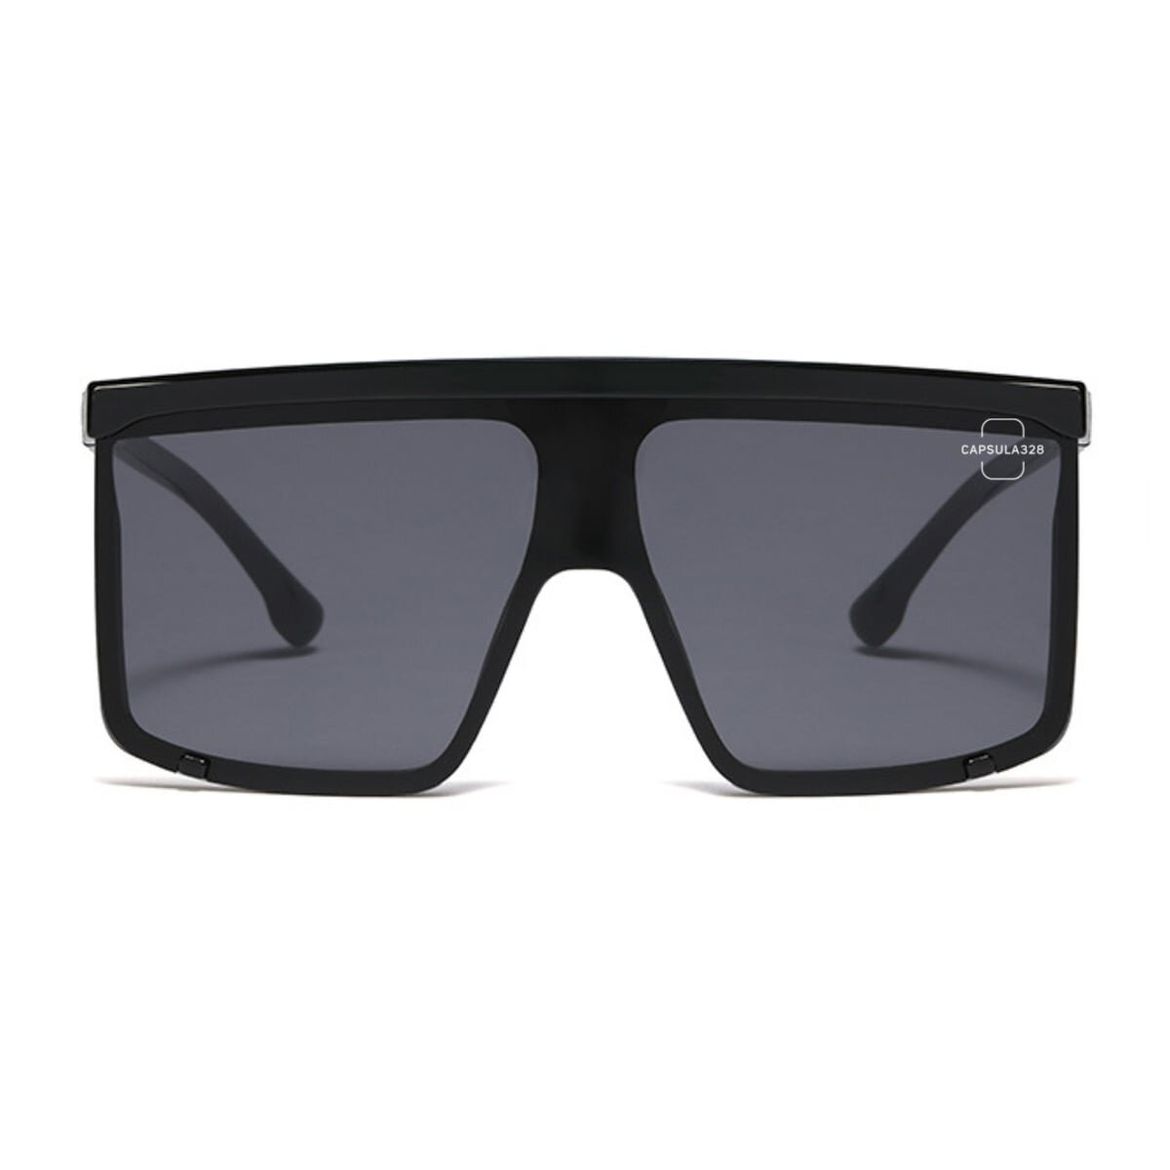 Солнцезащитные очки Mask II 2385